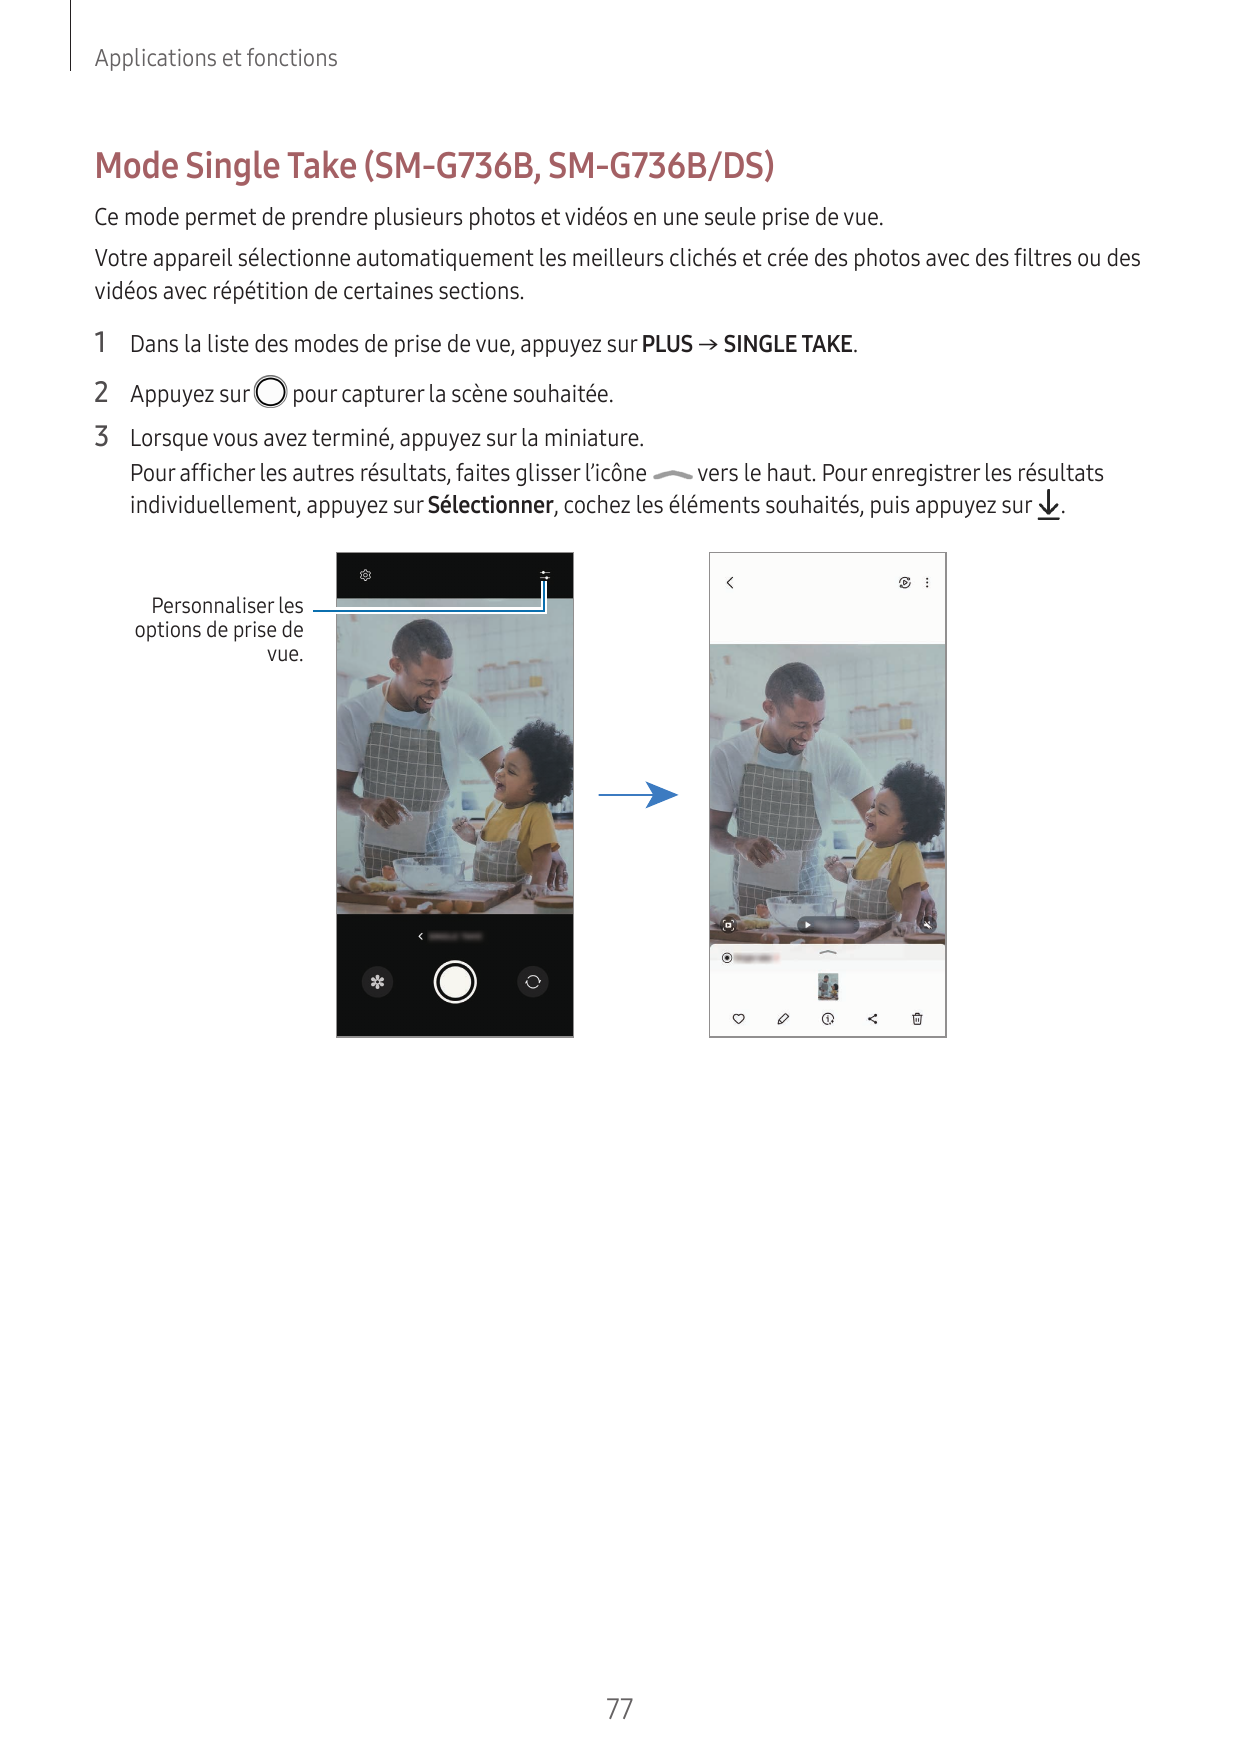 Applications et fonctionsMode Single Take (SM-G736B, SM-G736B/DS)Ce mode permet de prendre plusieurs photos et vidéos en une seu